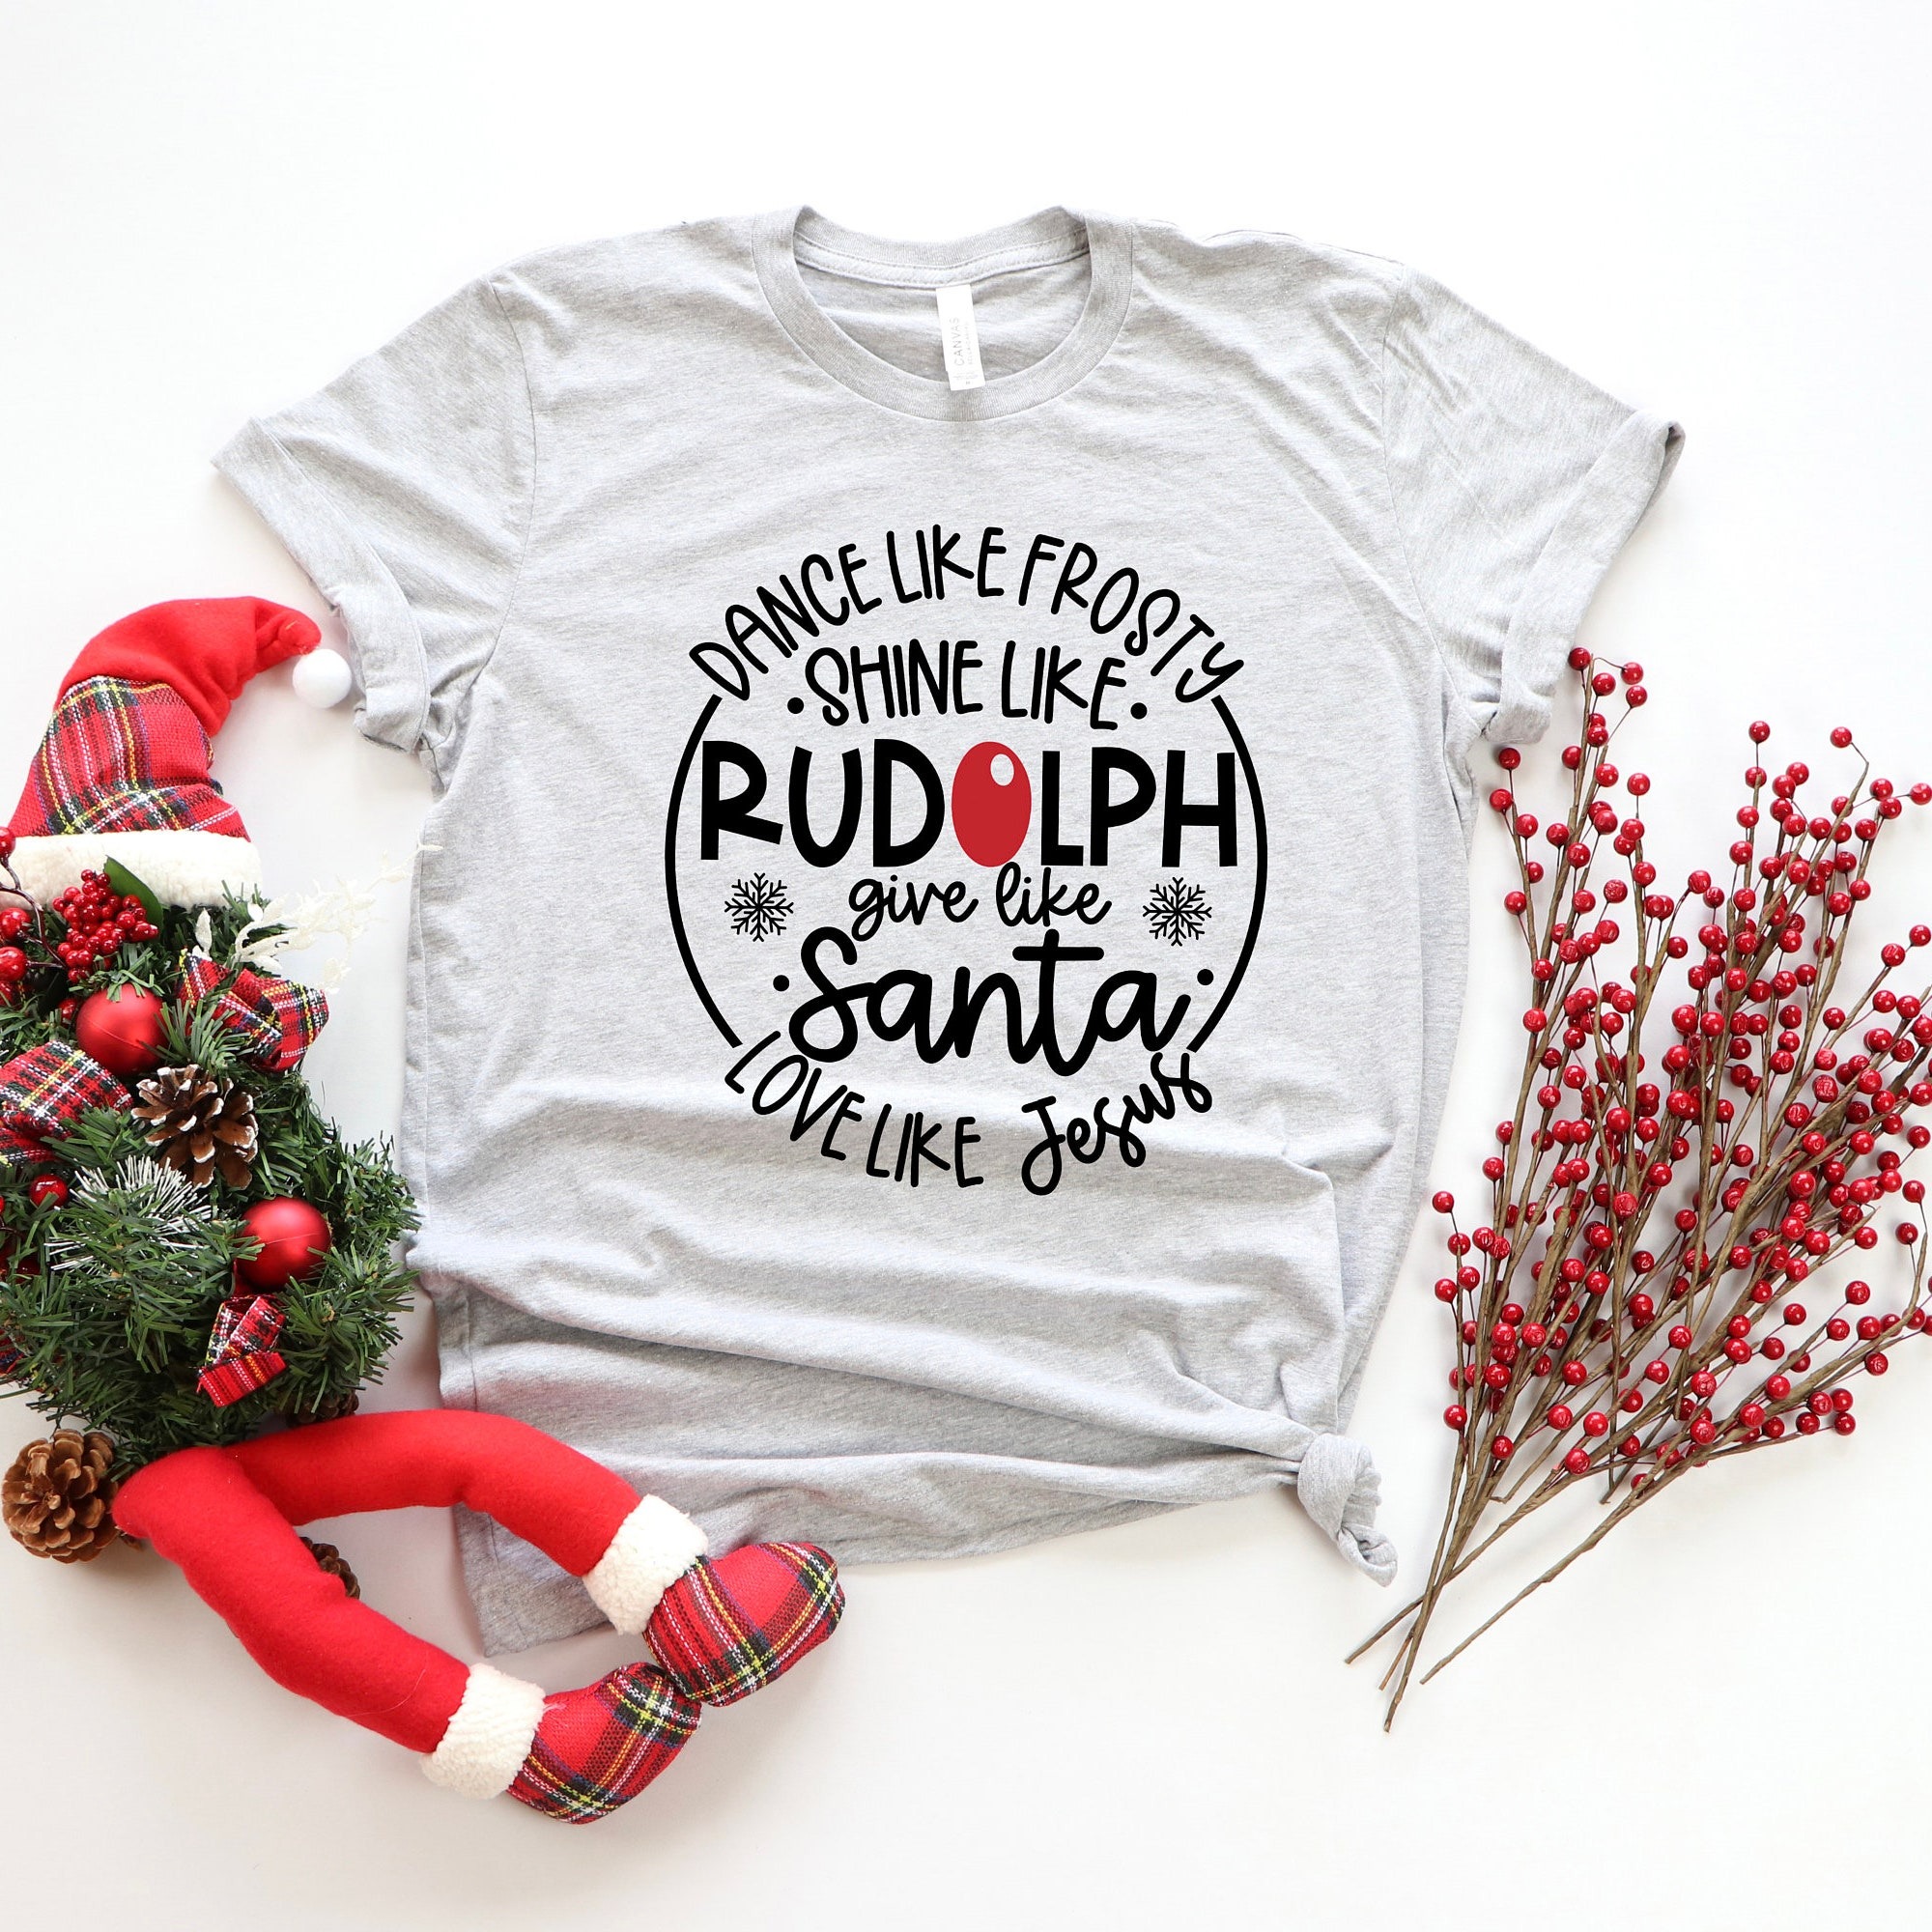 Dance Like Frosty Shine Like Rudolph Give Like Santa Love Like Jesus Shirt  Cute Christmas Shirt  Christmas Gift Shirt  Holiday Shirt